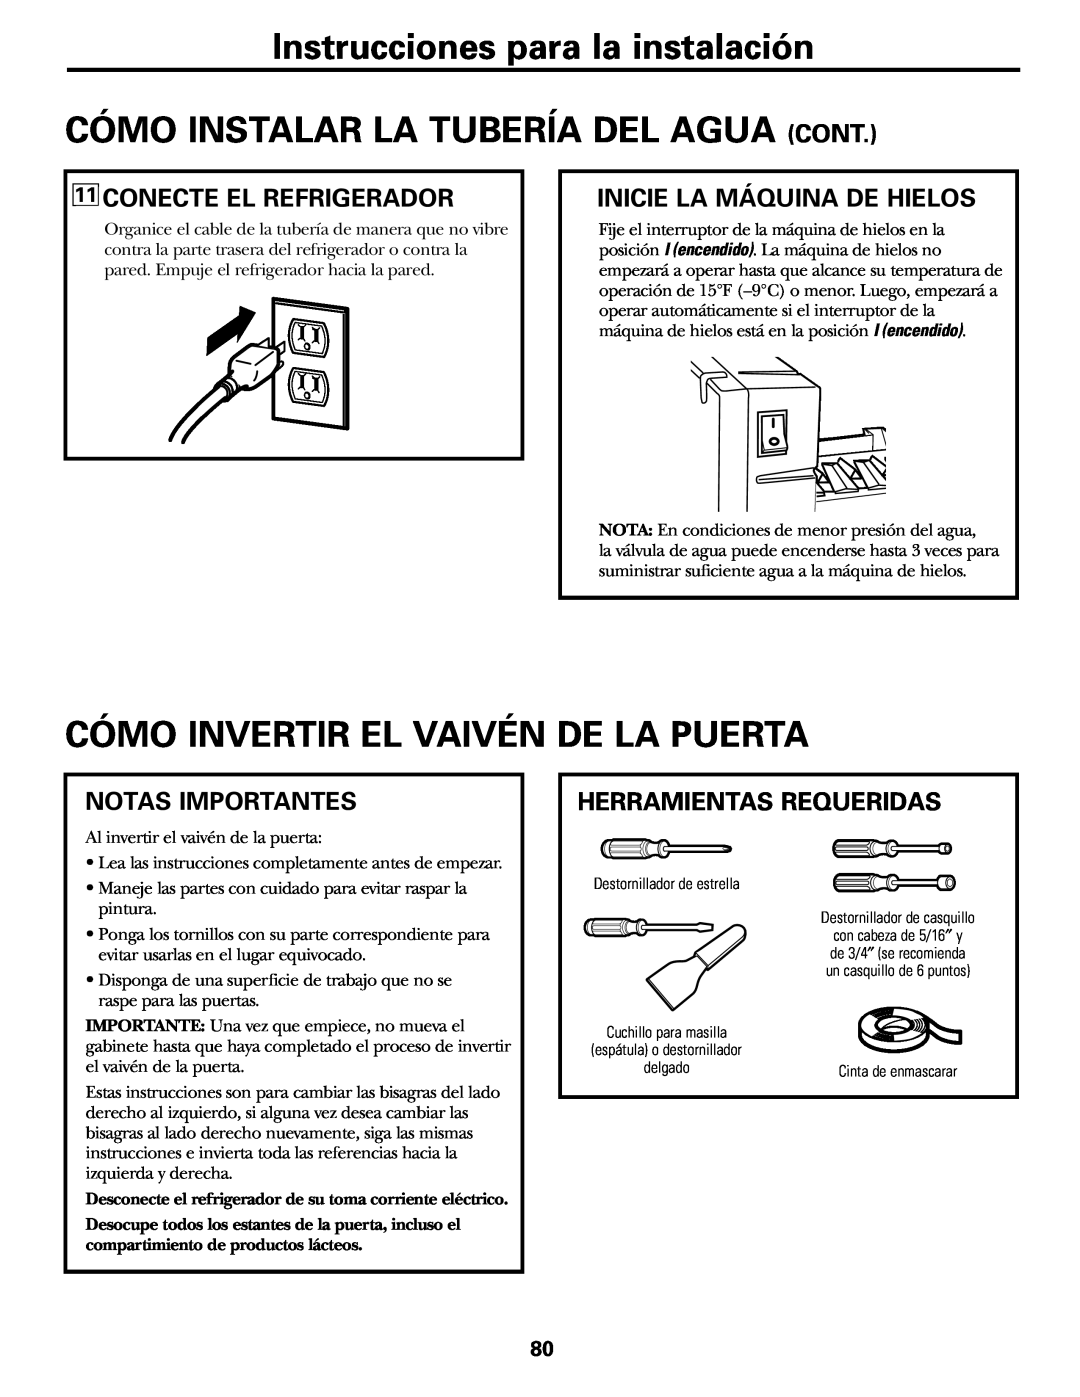 GE 200D2463P002 Cómo Invertir El Vaivén De La Puerta, Conecte El Refrigerador, Inicie La Máquina De Hielos 